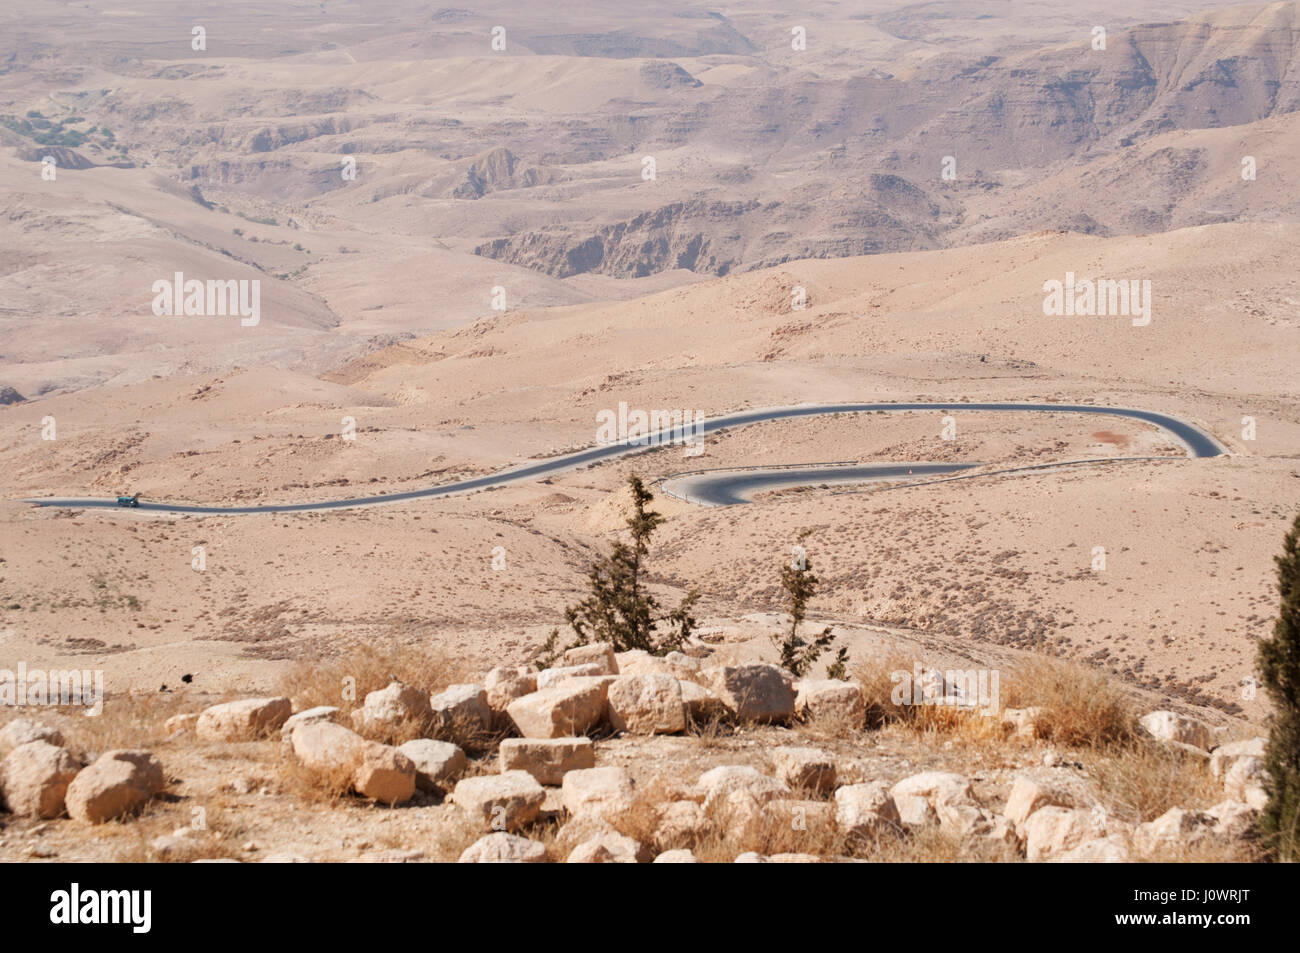 Jordanian et paysage désertique avec la route vers le Mont Nébo dans la Bible hébraïque le lieu où Moïse a reçu un avis de la Terre Promise Banque D'Images